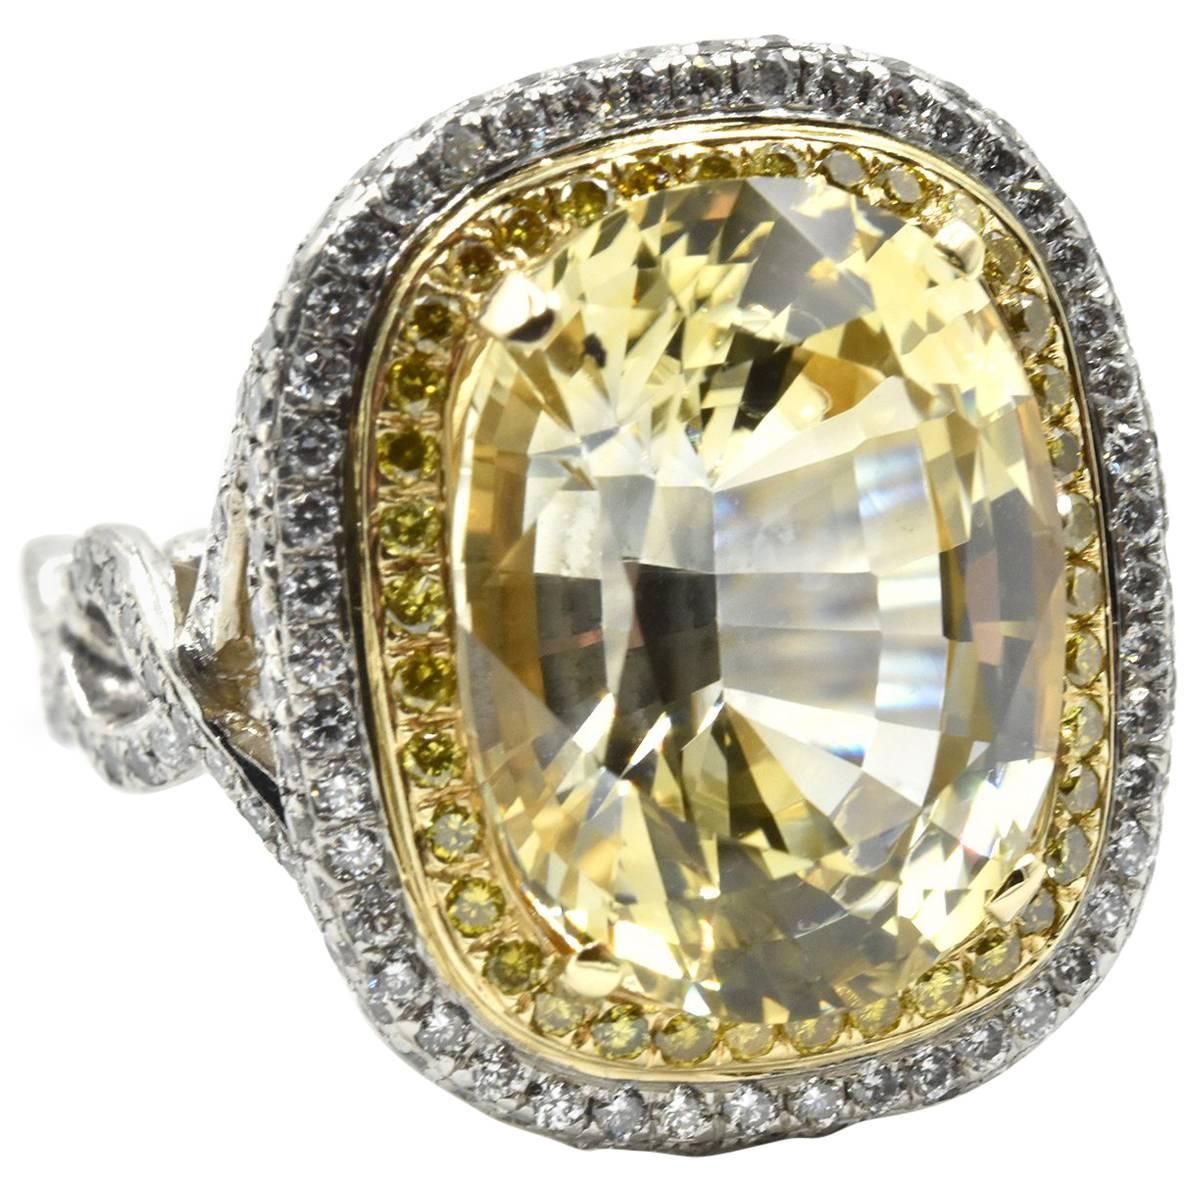 11.34 Carat Yellow Sapphire with White and Yellow Diamond Platinum Ring